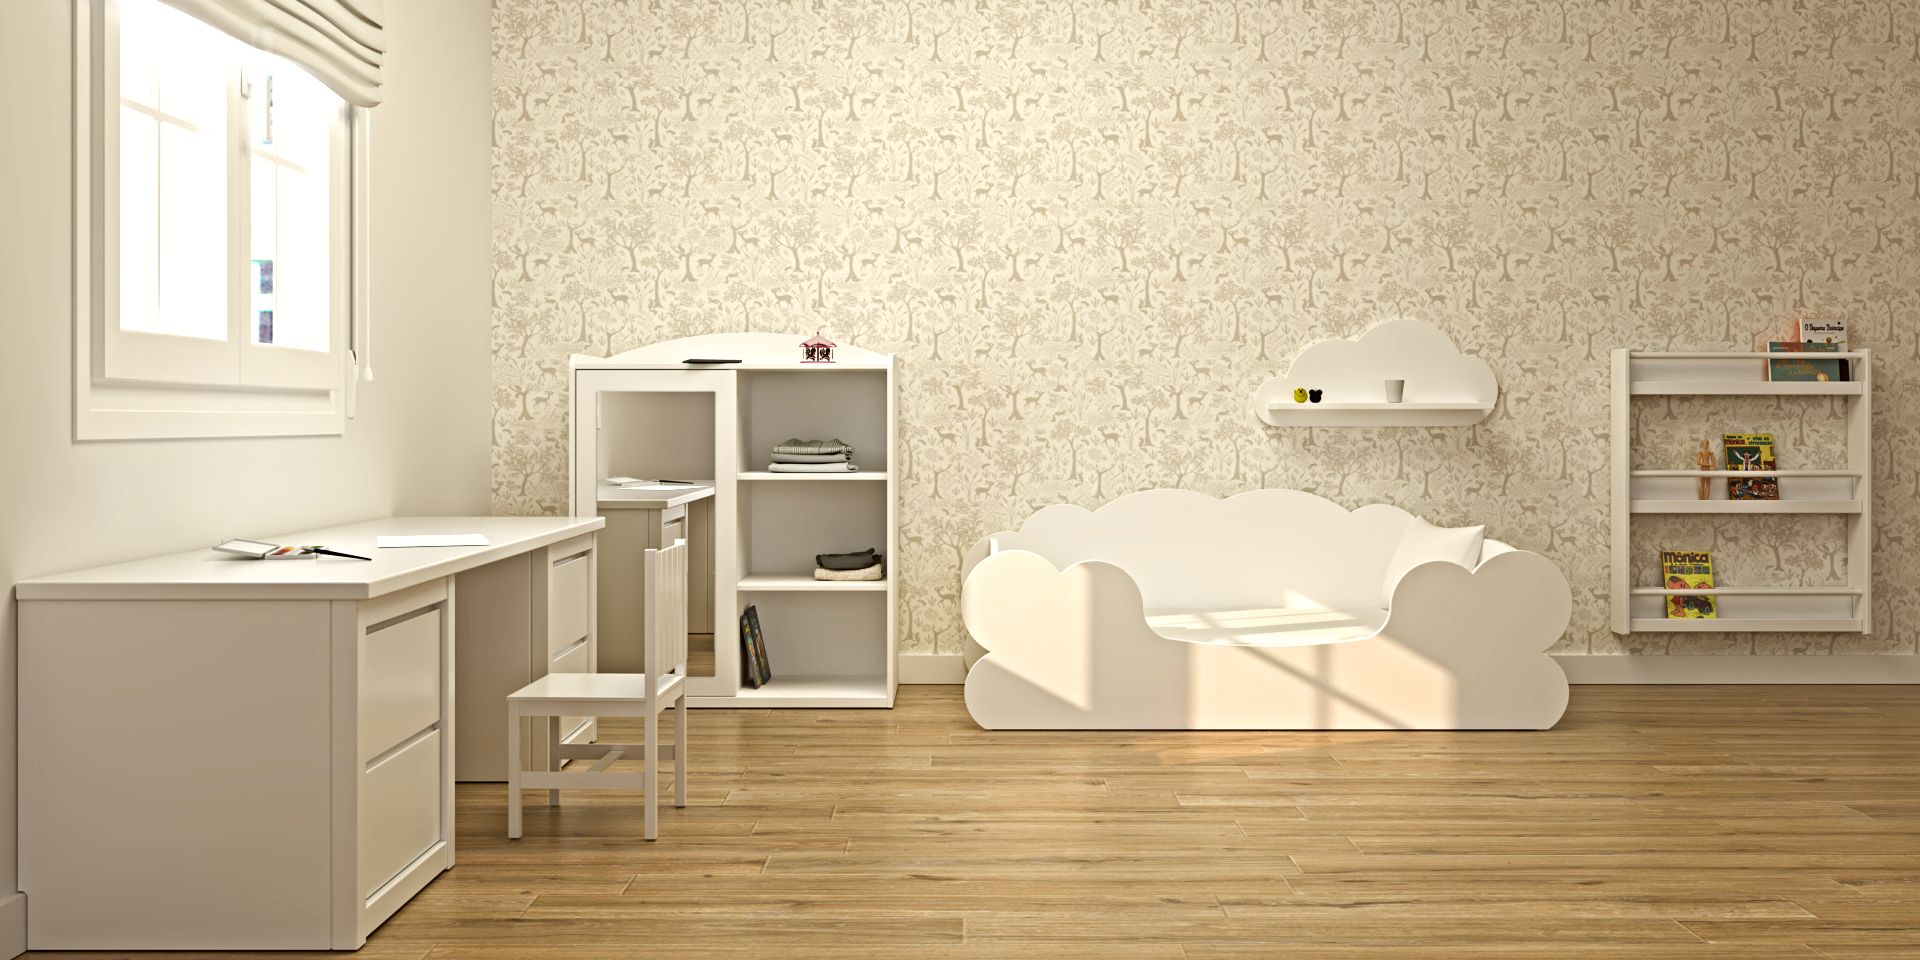 Cama nido nube infantil, con armario de puerta espejo y zona de estudio, ideal para habitaciones infantiles | Montessori